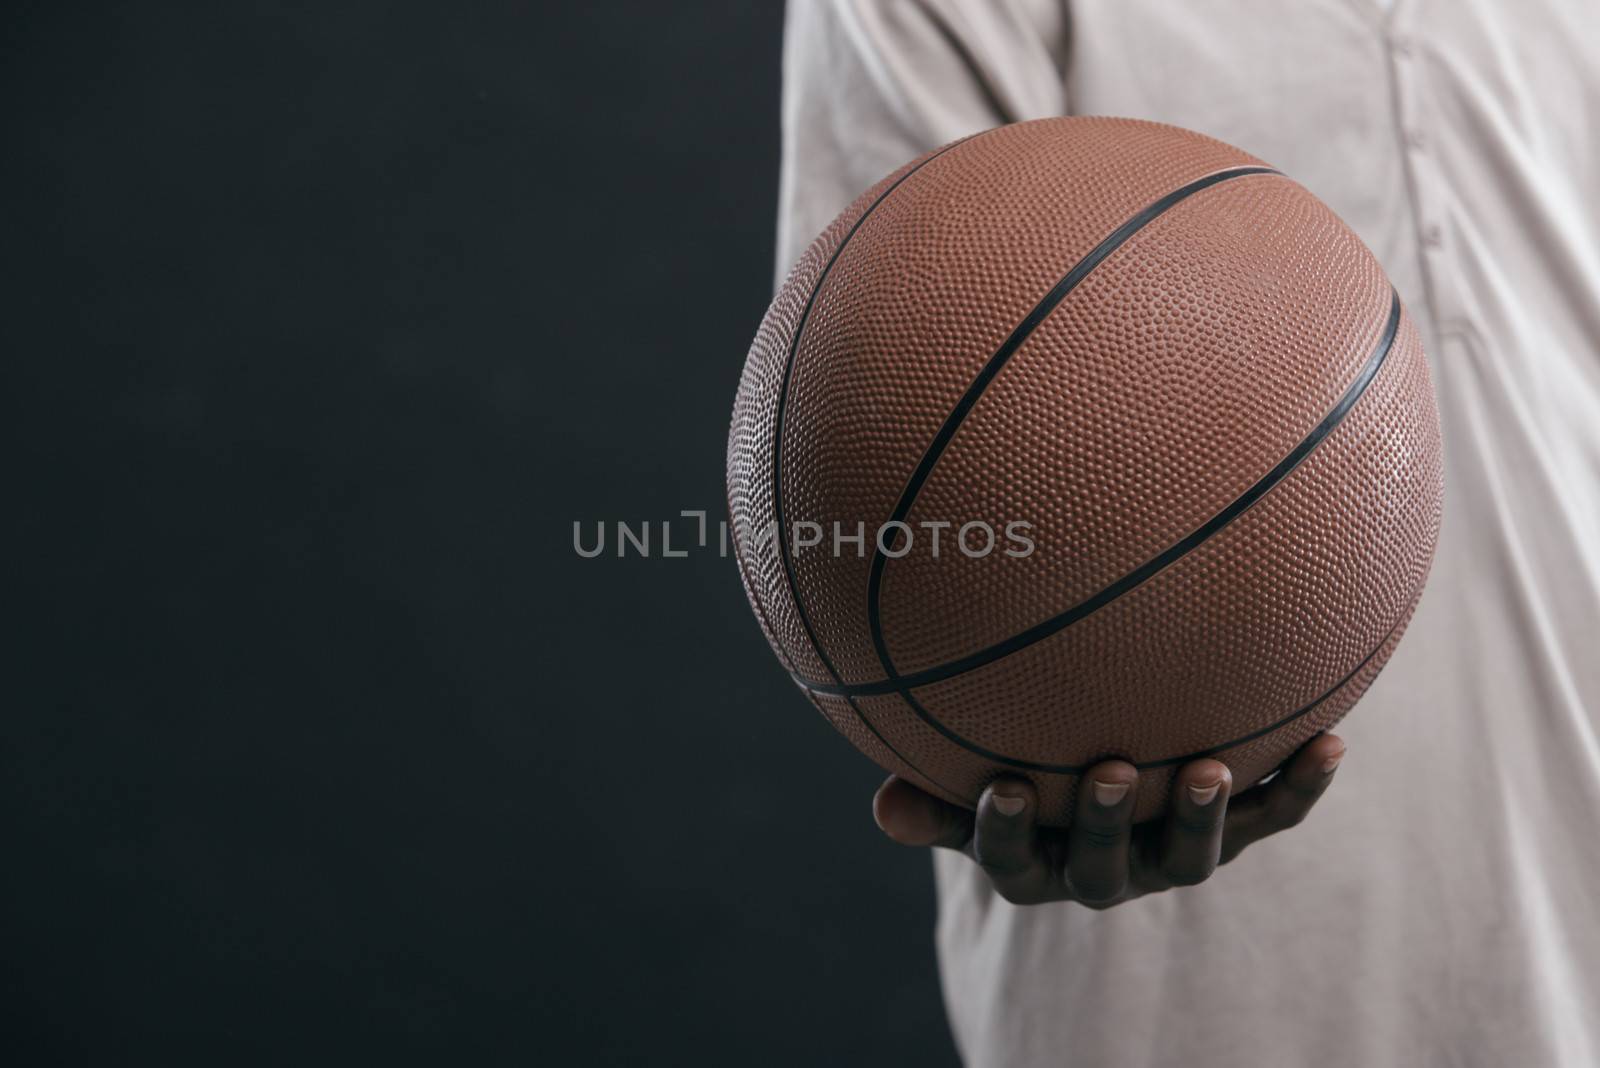 African boy holding a basket ball, hand close up